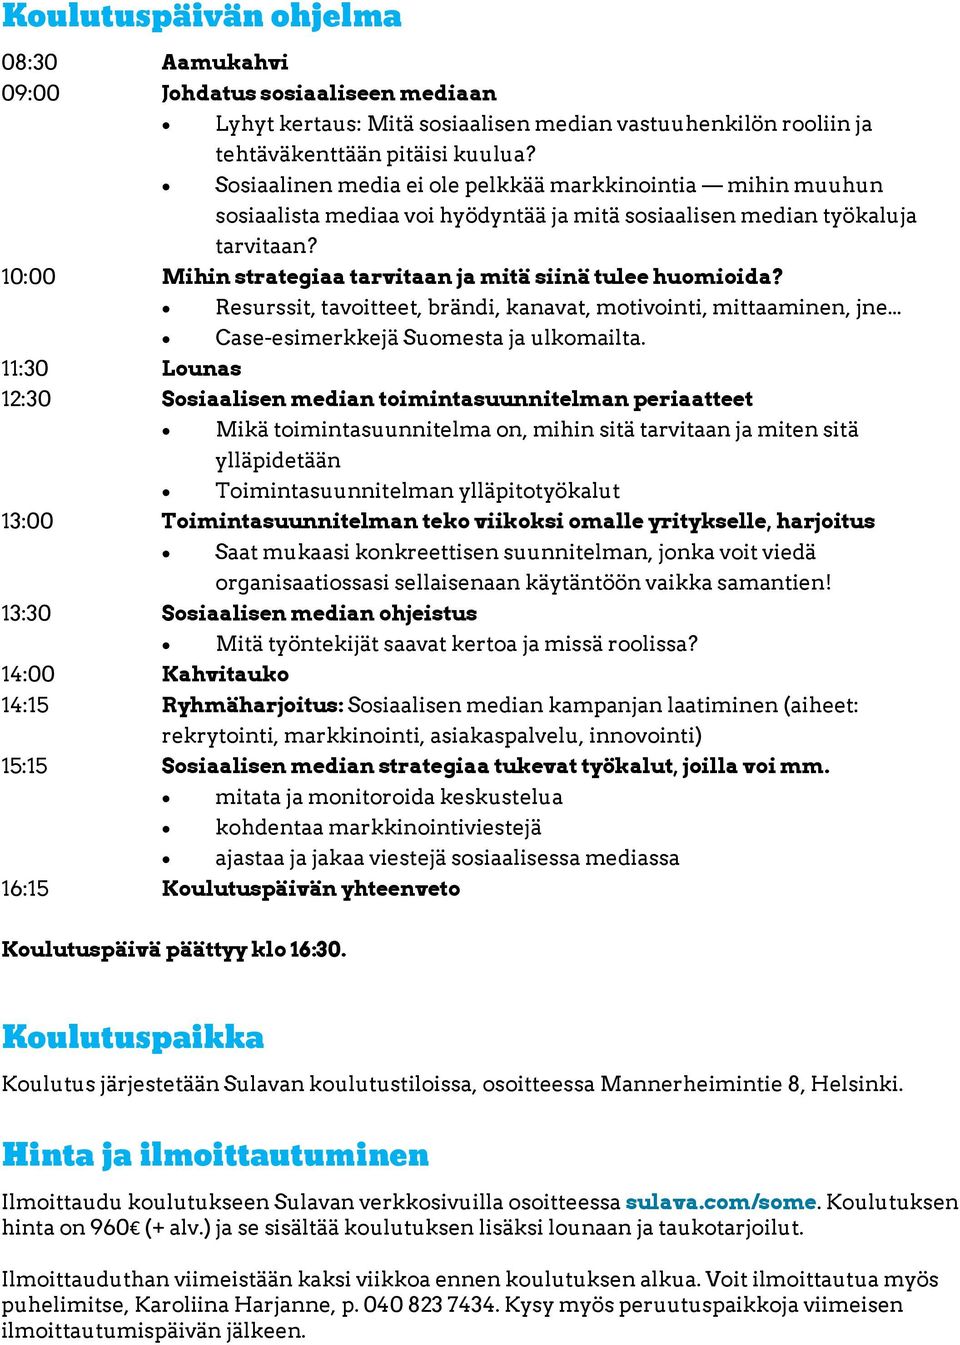 10:00 Mihin strategiaa tarvitaan ja mitä siinä tulee huomioida? Resurssit, tavoitteet, brändi, kanavat, motivointi, mittaaminen, jne... Case-esimerkkejä Suomesta ja ulkomailta.